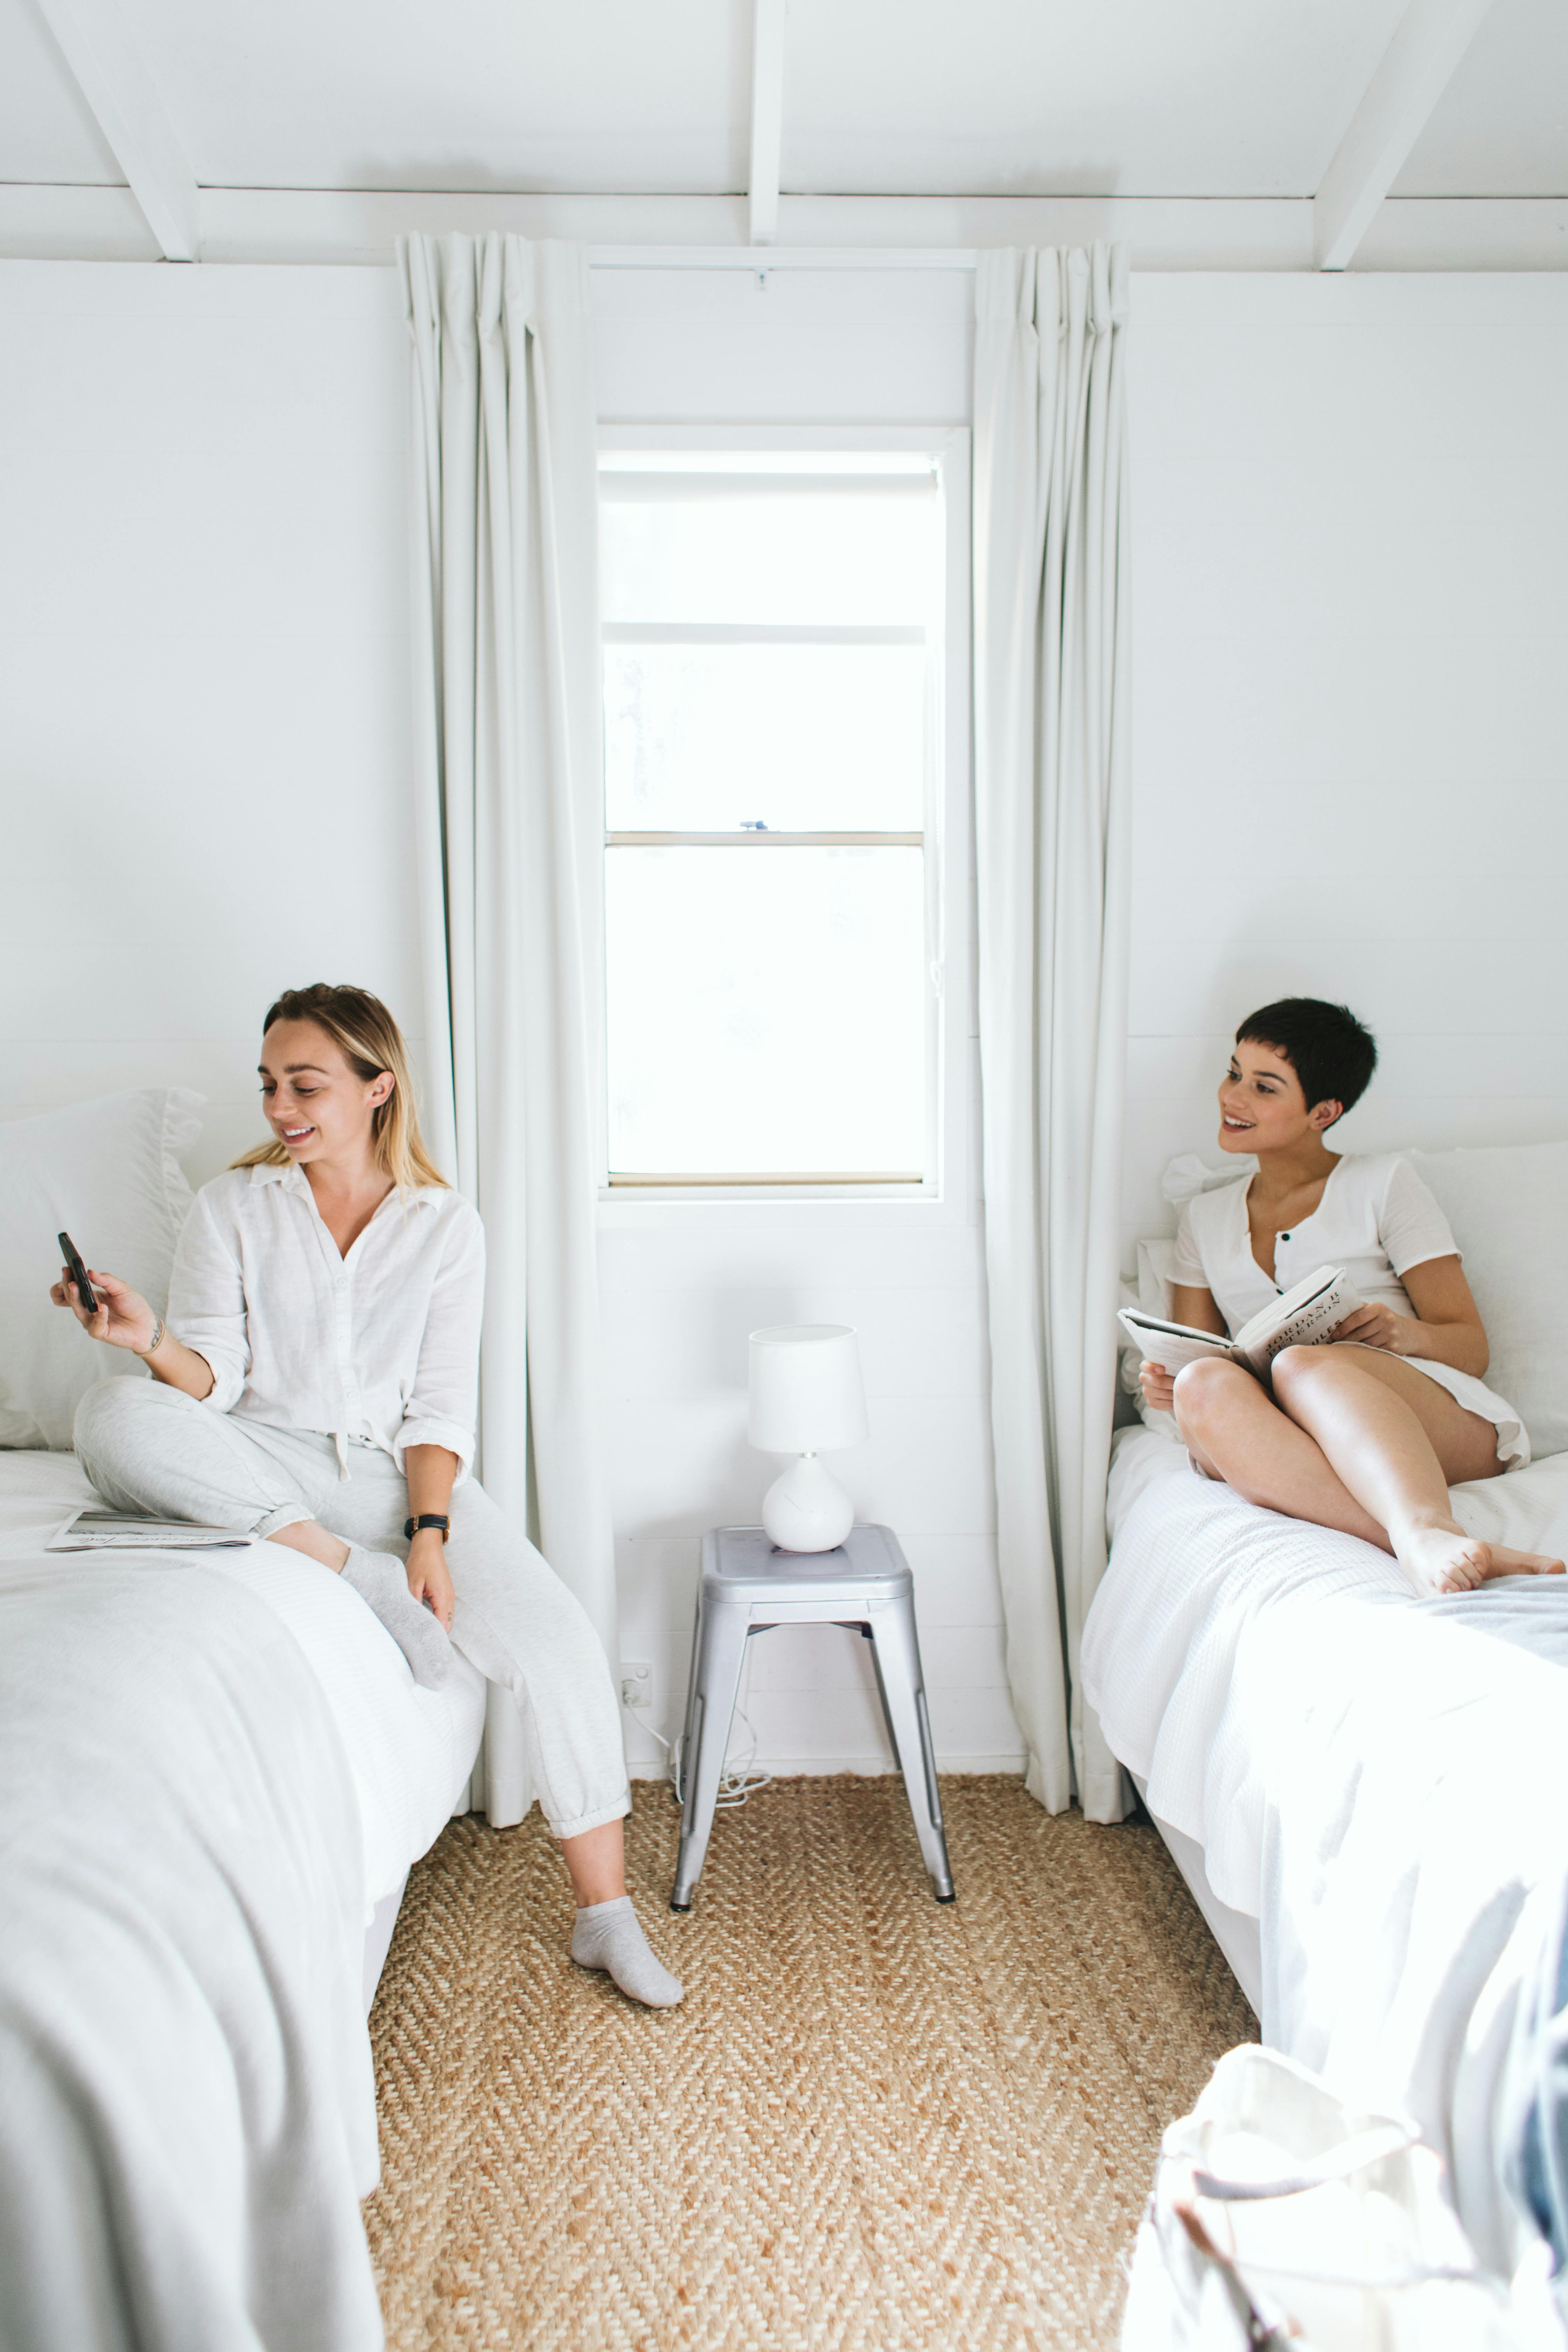 Deux femmes assises sur des lits individuels | Source : Pexels